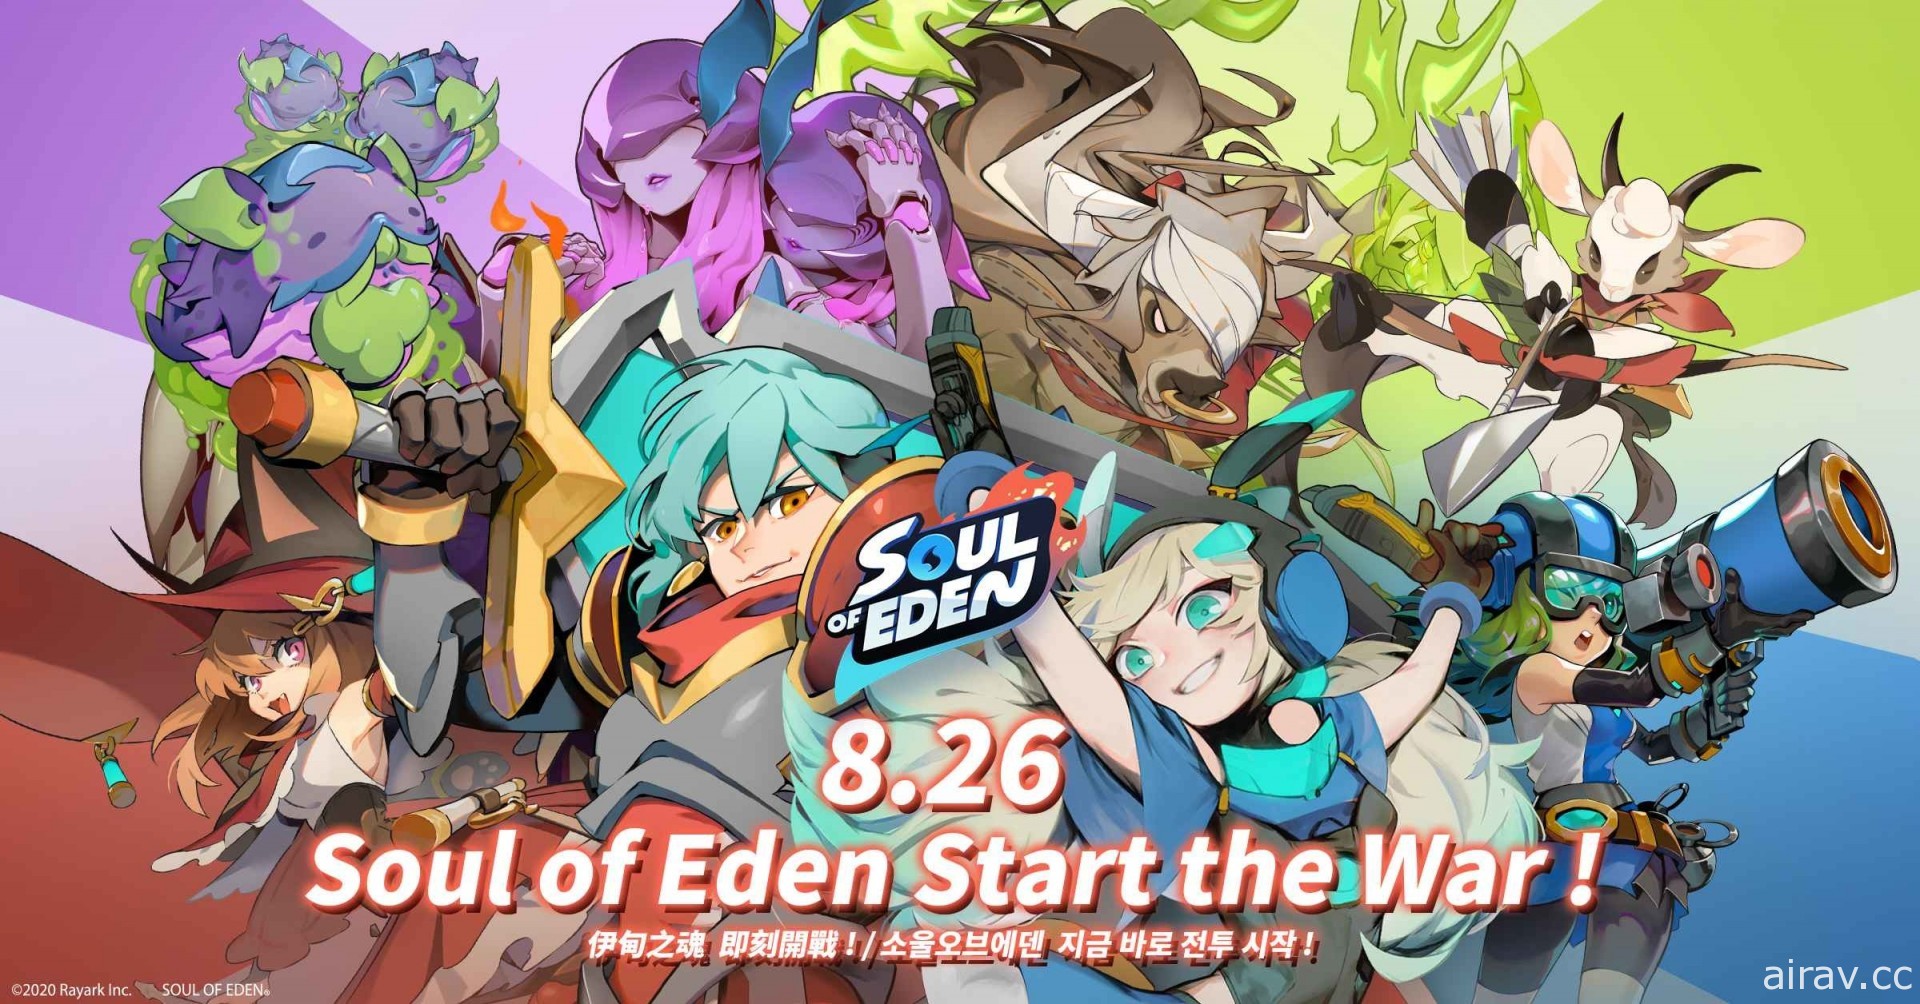 《Soul of Eden 伊甸之魂》將於 8 月 26 日上市 揭開四大陣營特色與美術風格